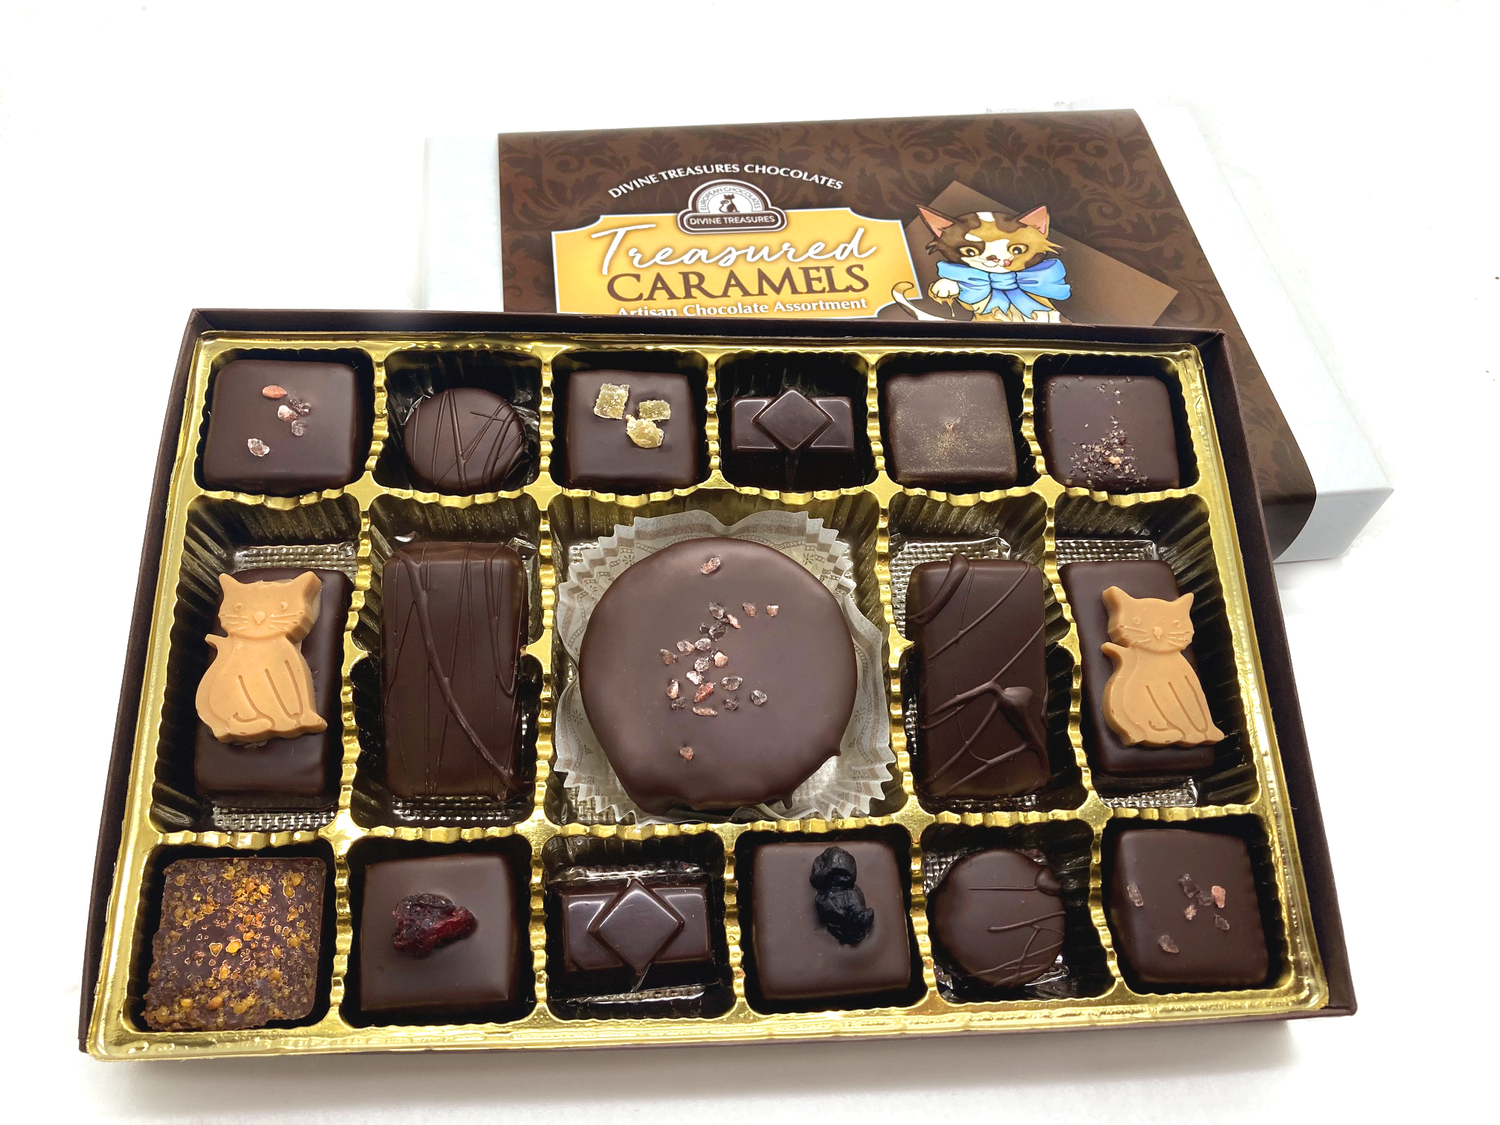 Treasured Caramels Artisan Vegan Assortment — Divine Treasures Chocolates